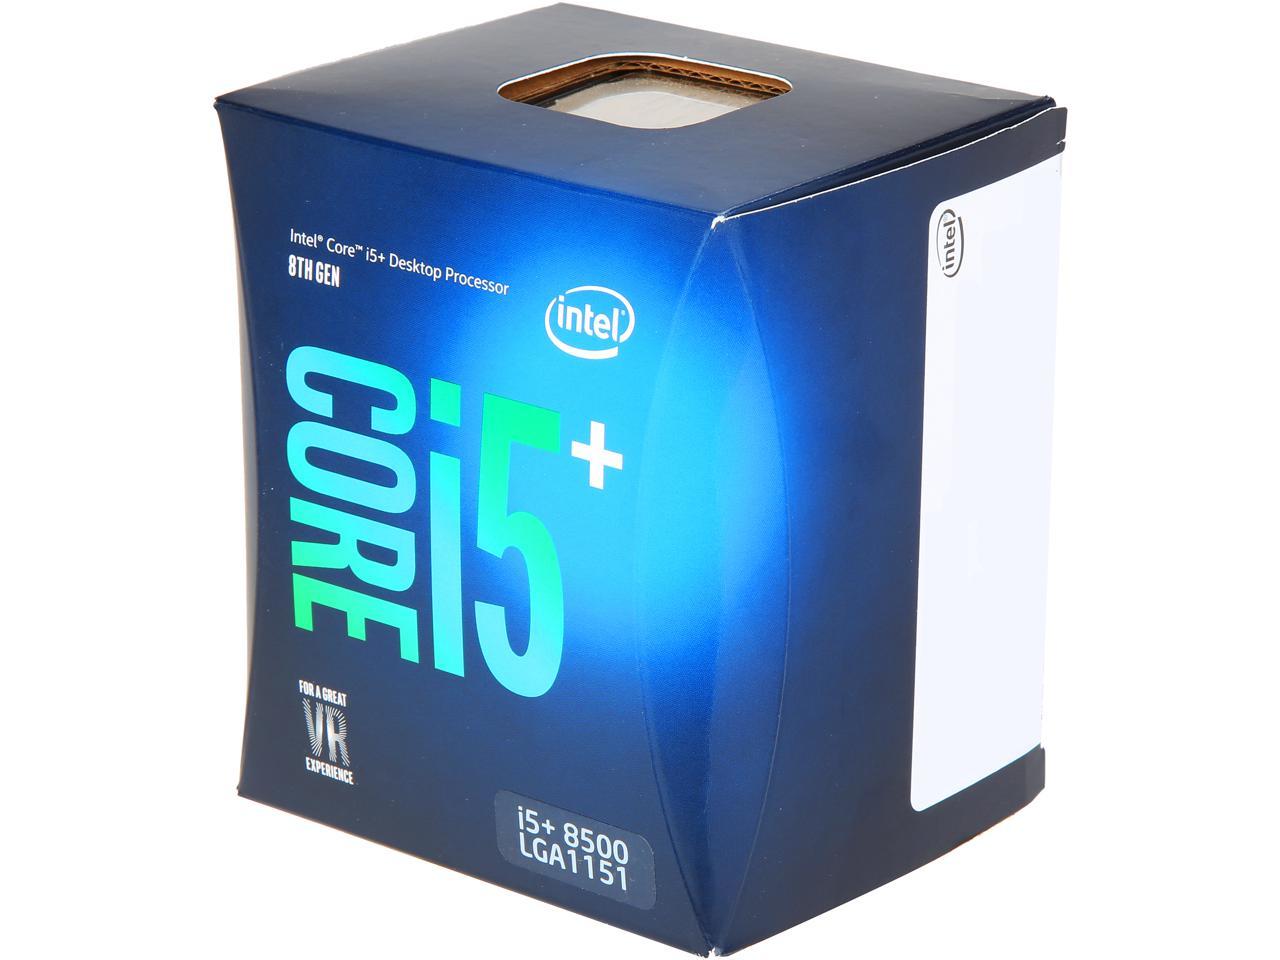 Core first. Core i5 13600kf. Buy Intel Core i5. Intel коробка. Intel 5+.